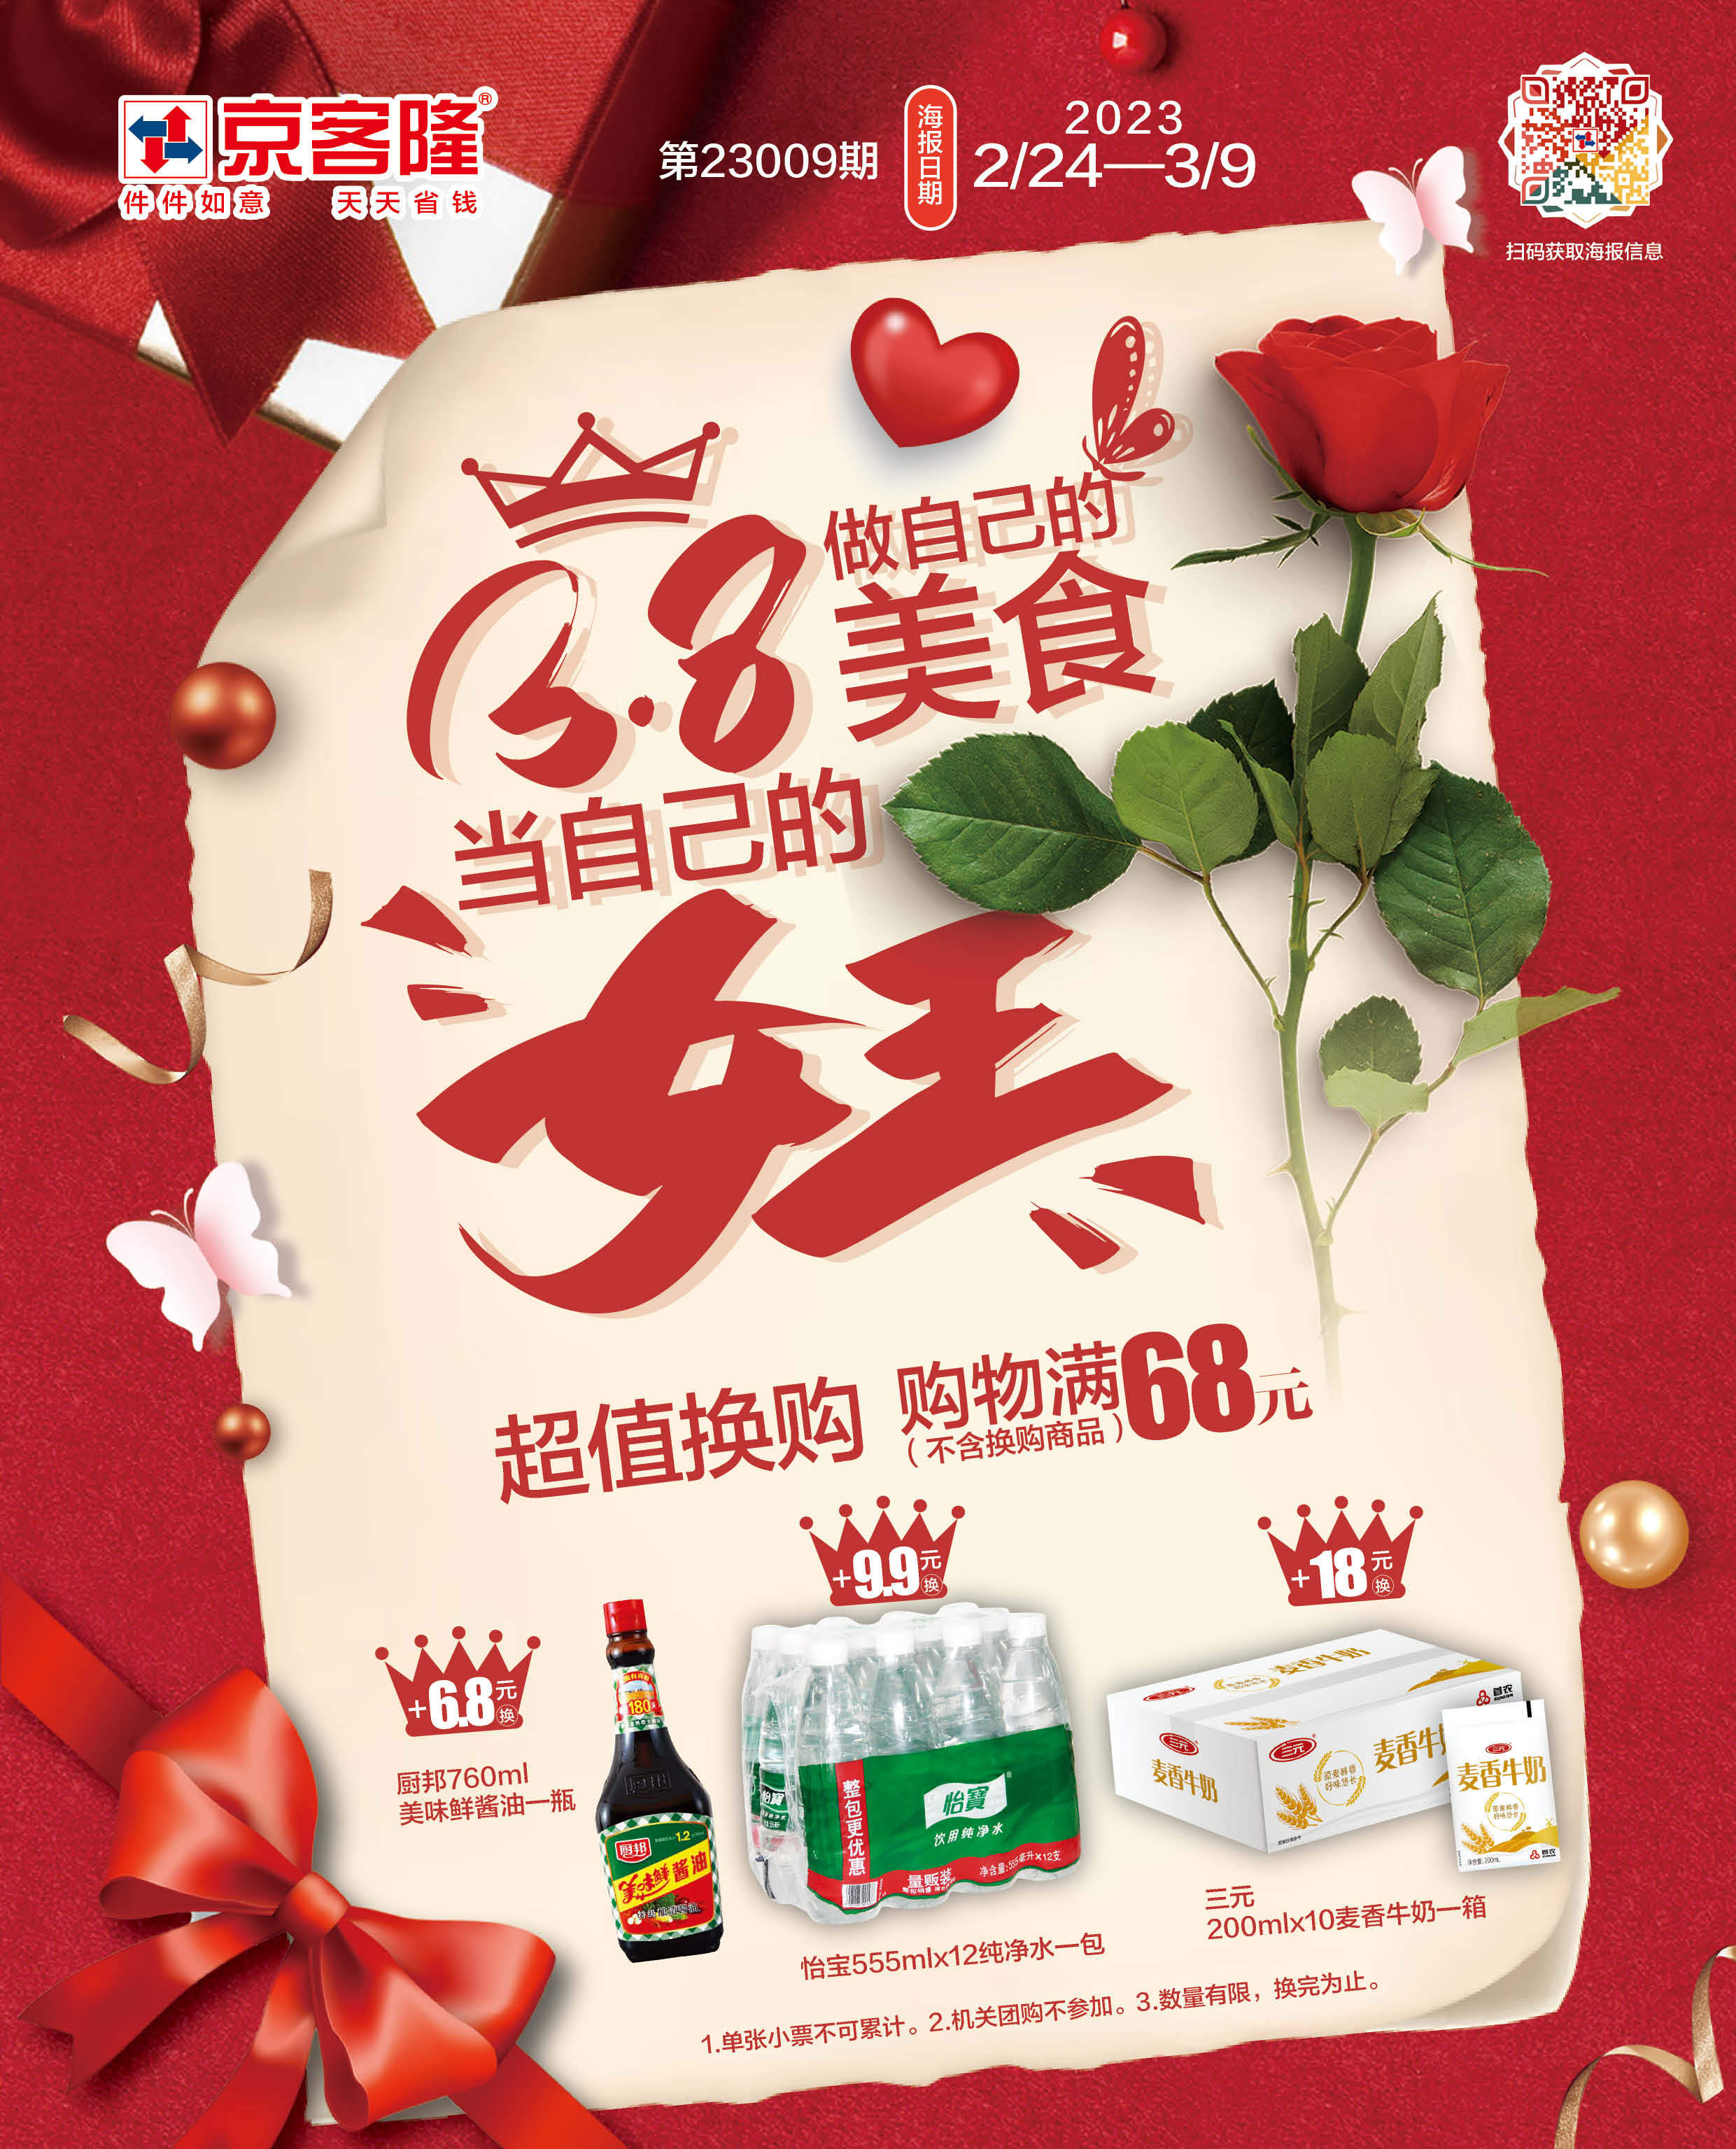 北京京客隆超市促销海报（第23009期）